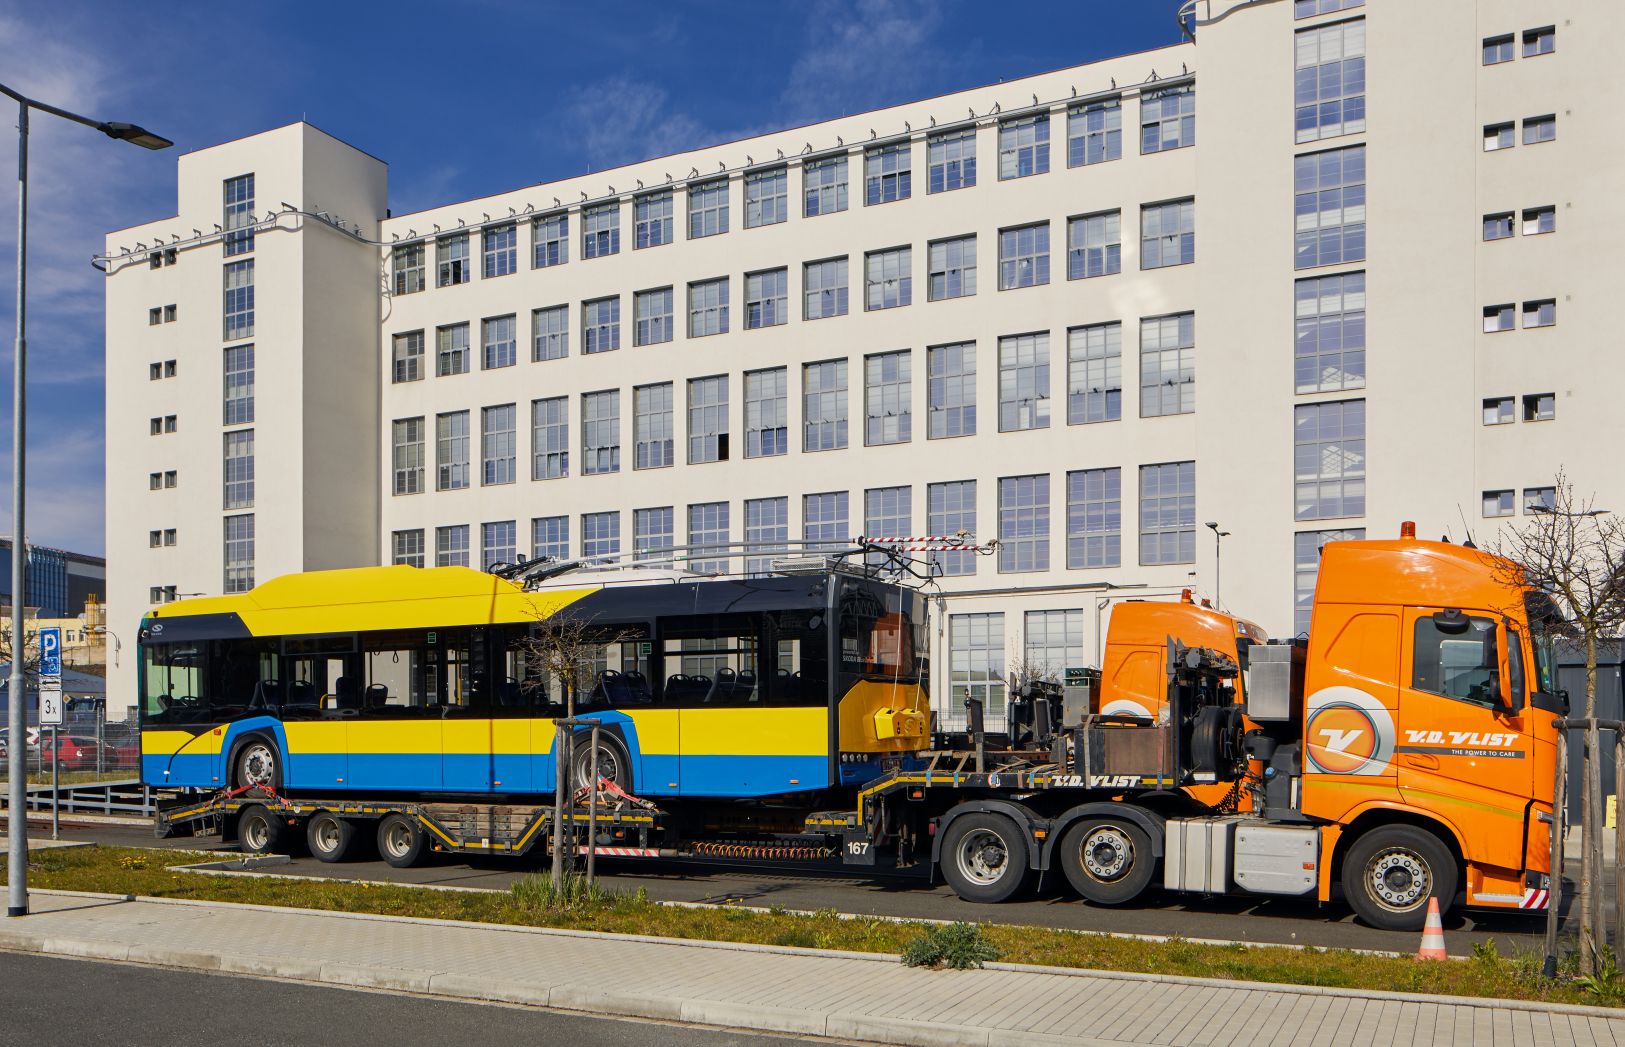 Trolejbusy s výzbrojí Škoda pro rumunské město Ploješť. Pramen: Škoda Electric